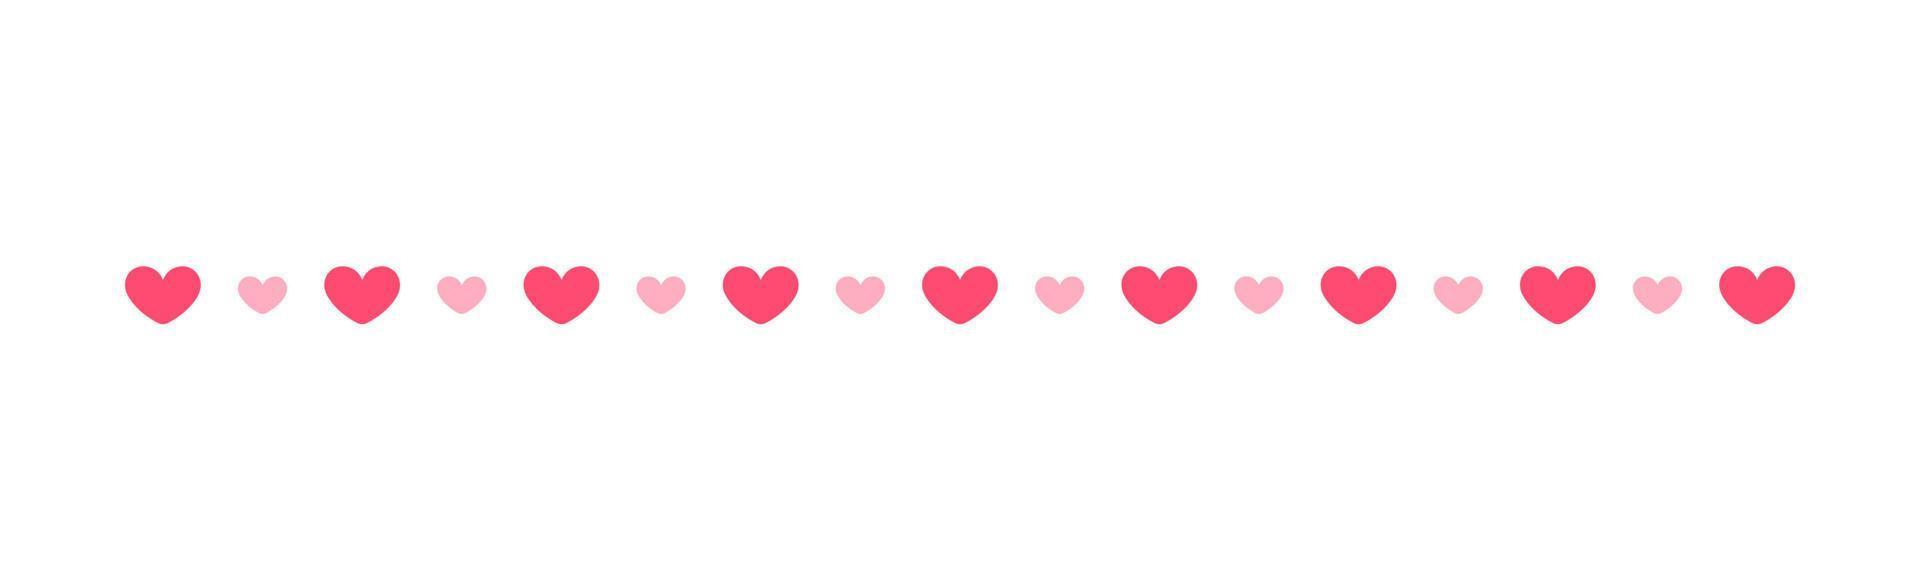 séparateur de bordure de motif de coeurs roses. valentines romantique pastel simple plat clipart illustration vectorielle vecteur